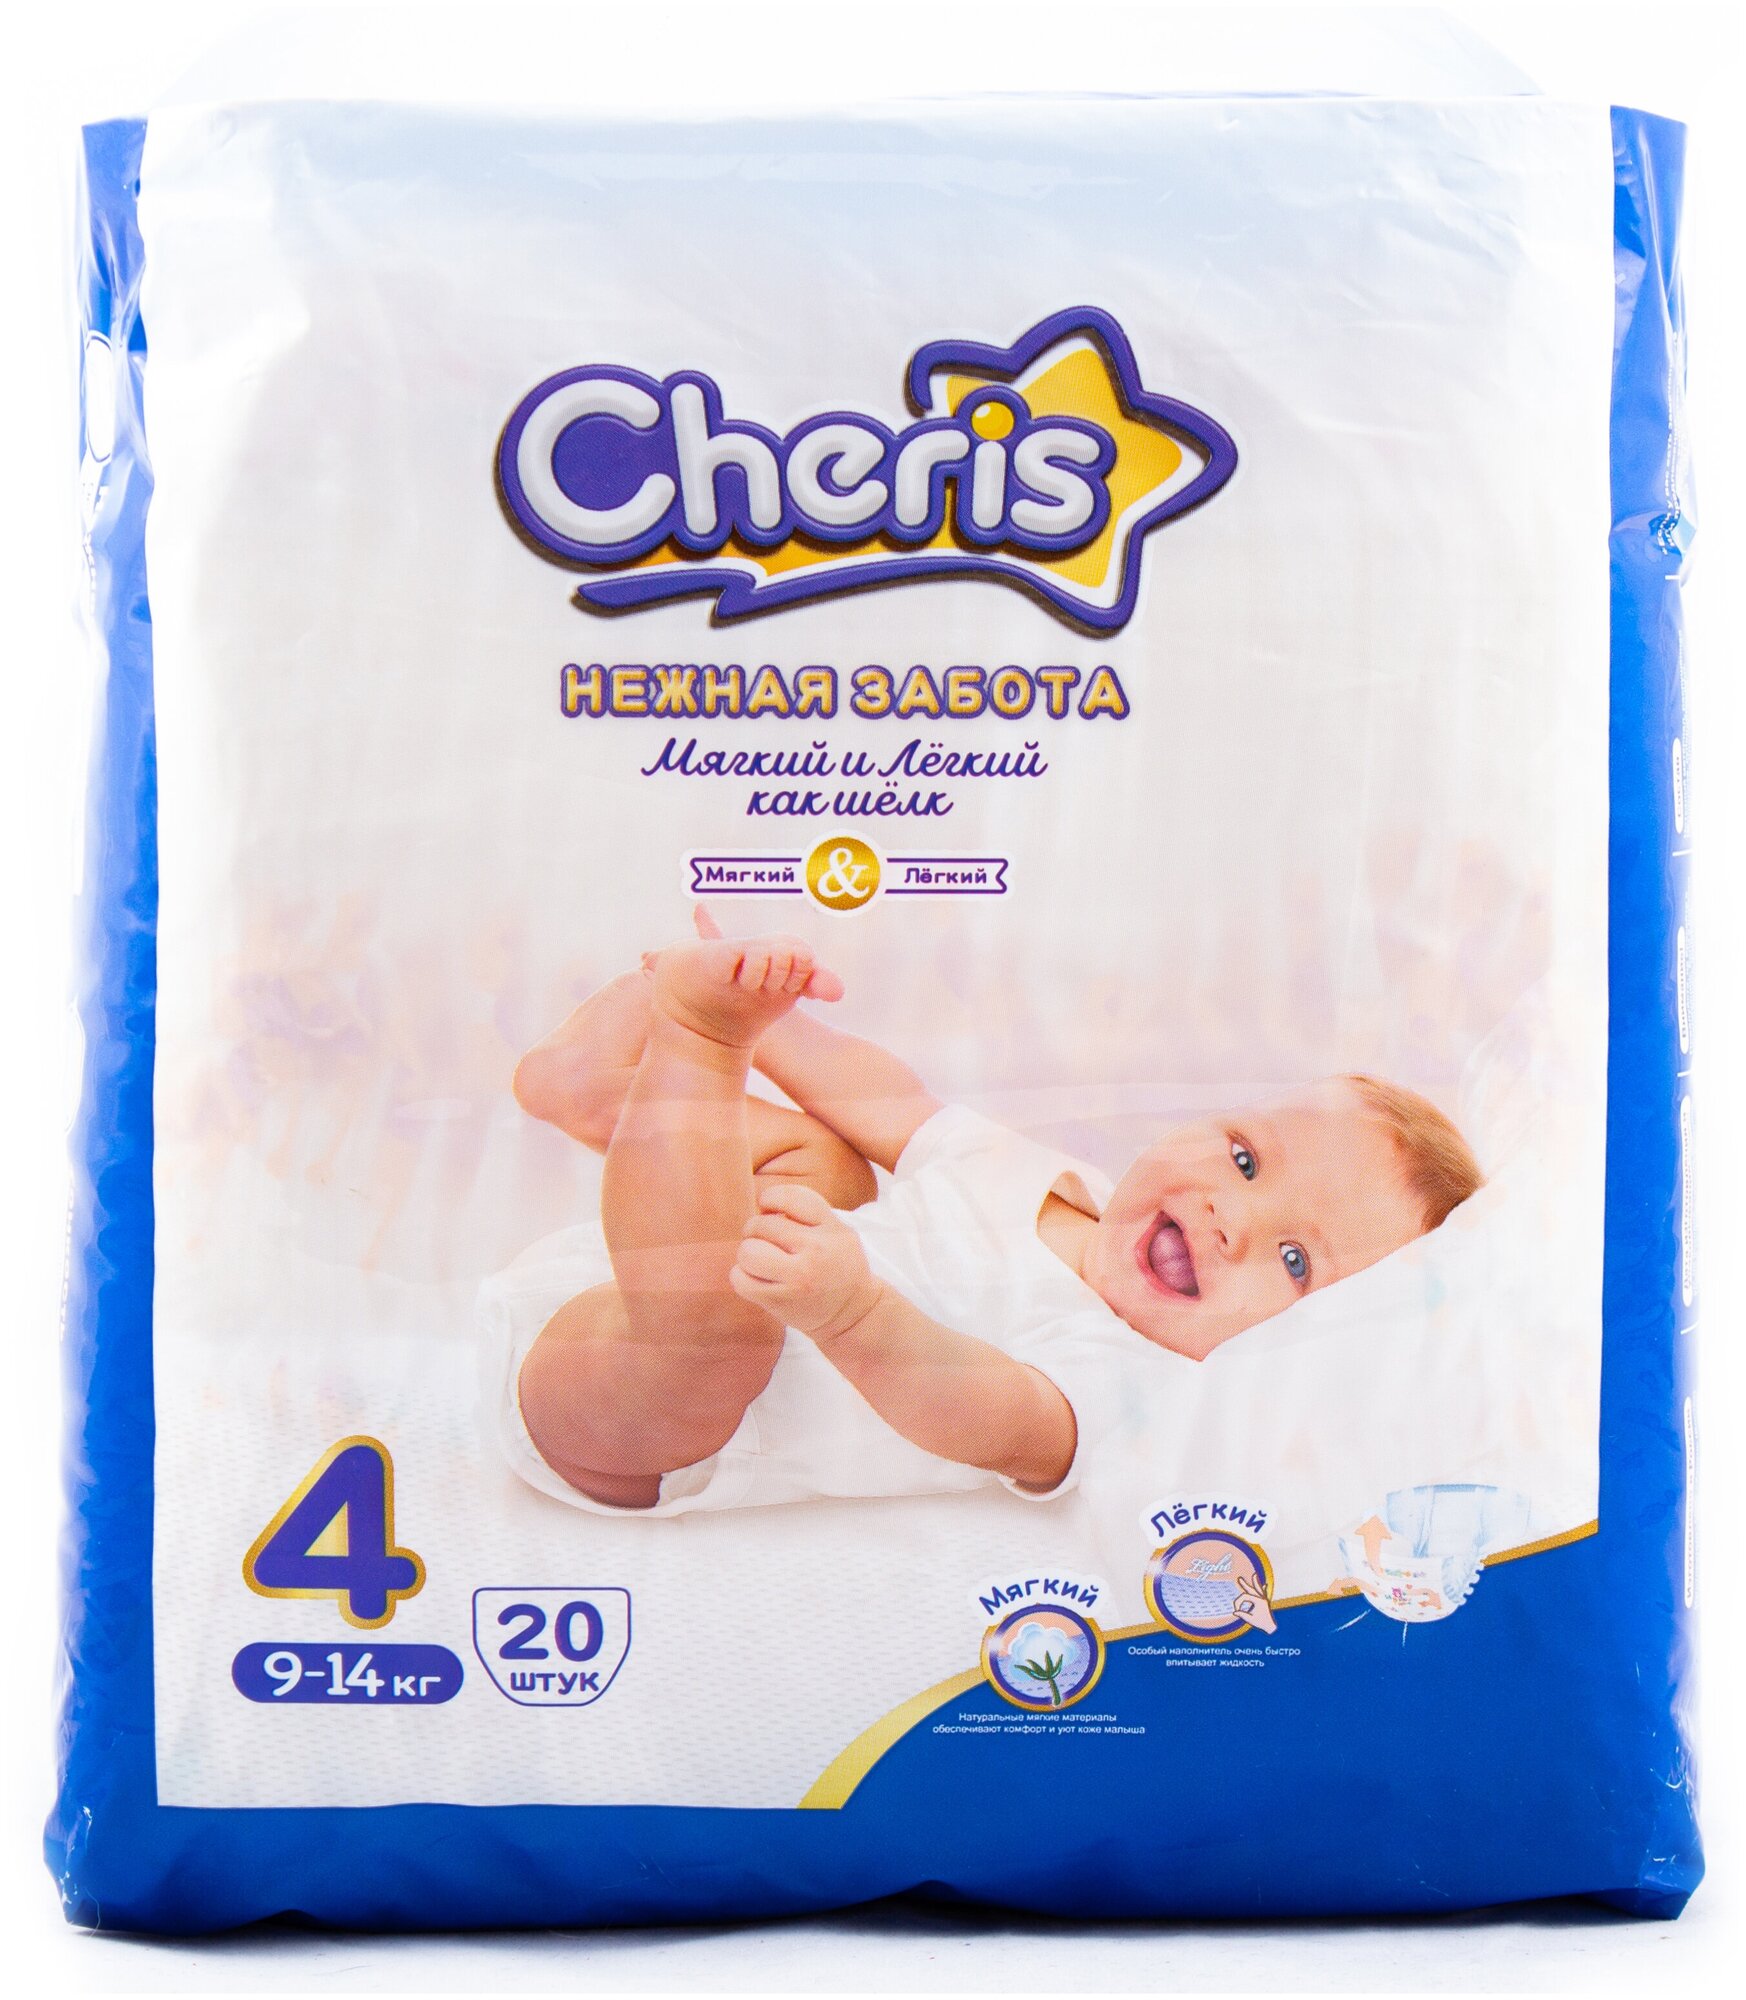 Детские подгузники Cheris 20 шт. размер L (9-14кг.)